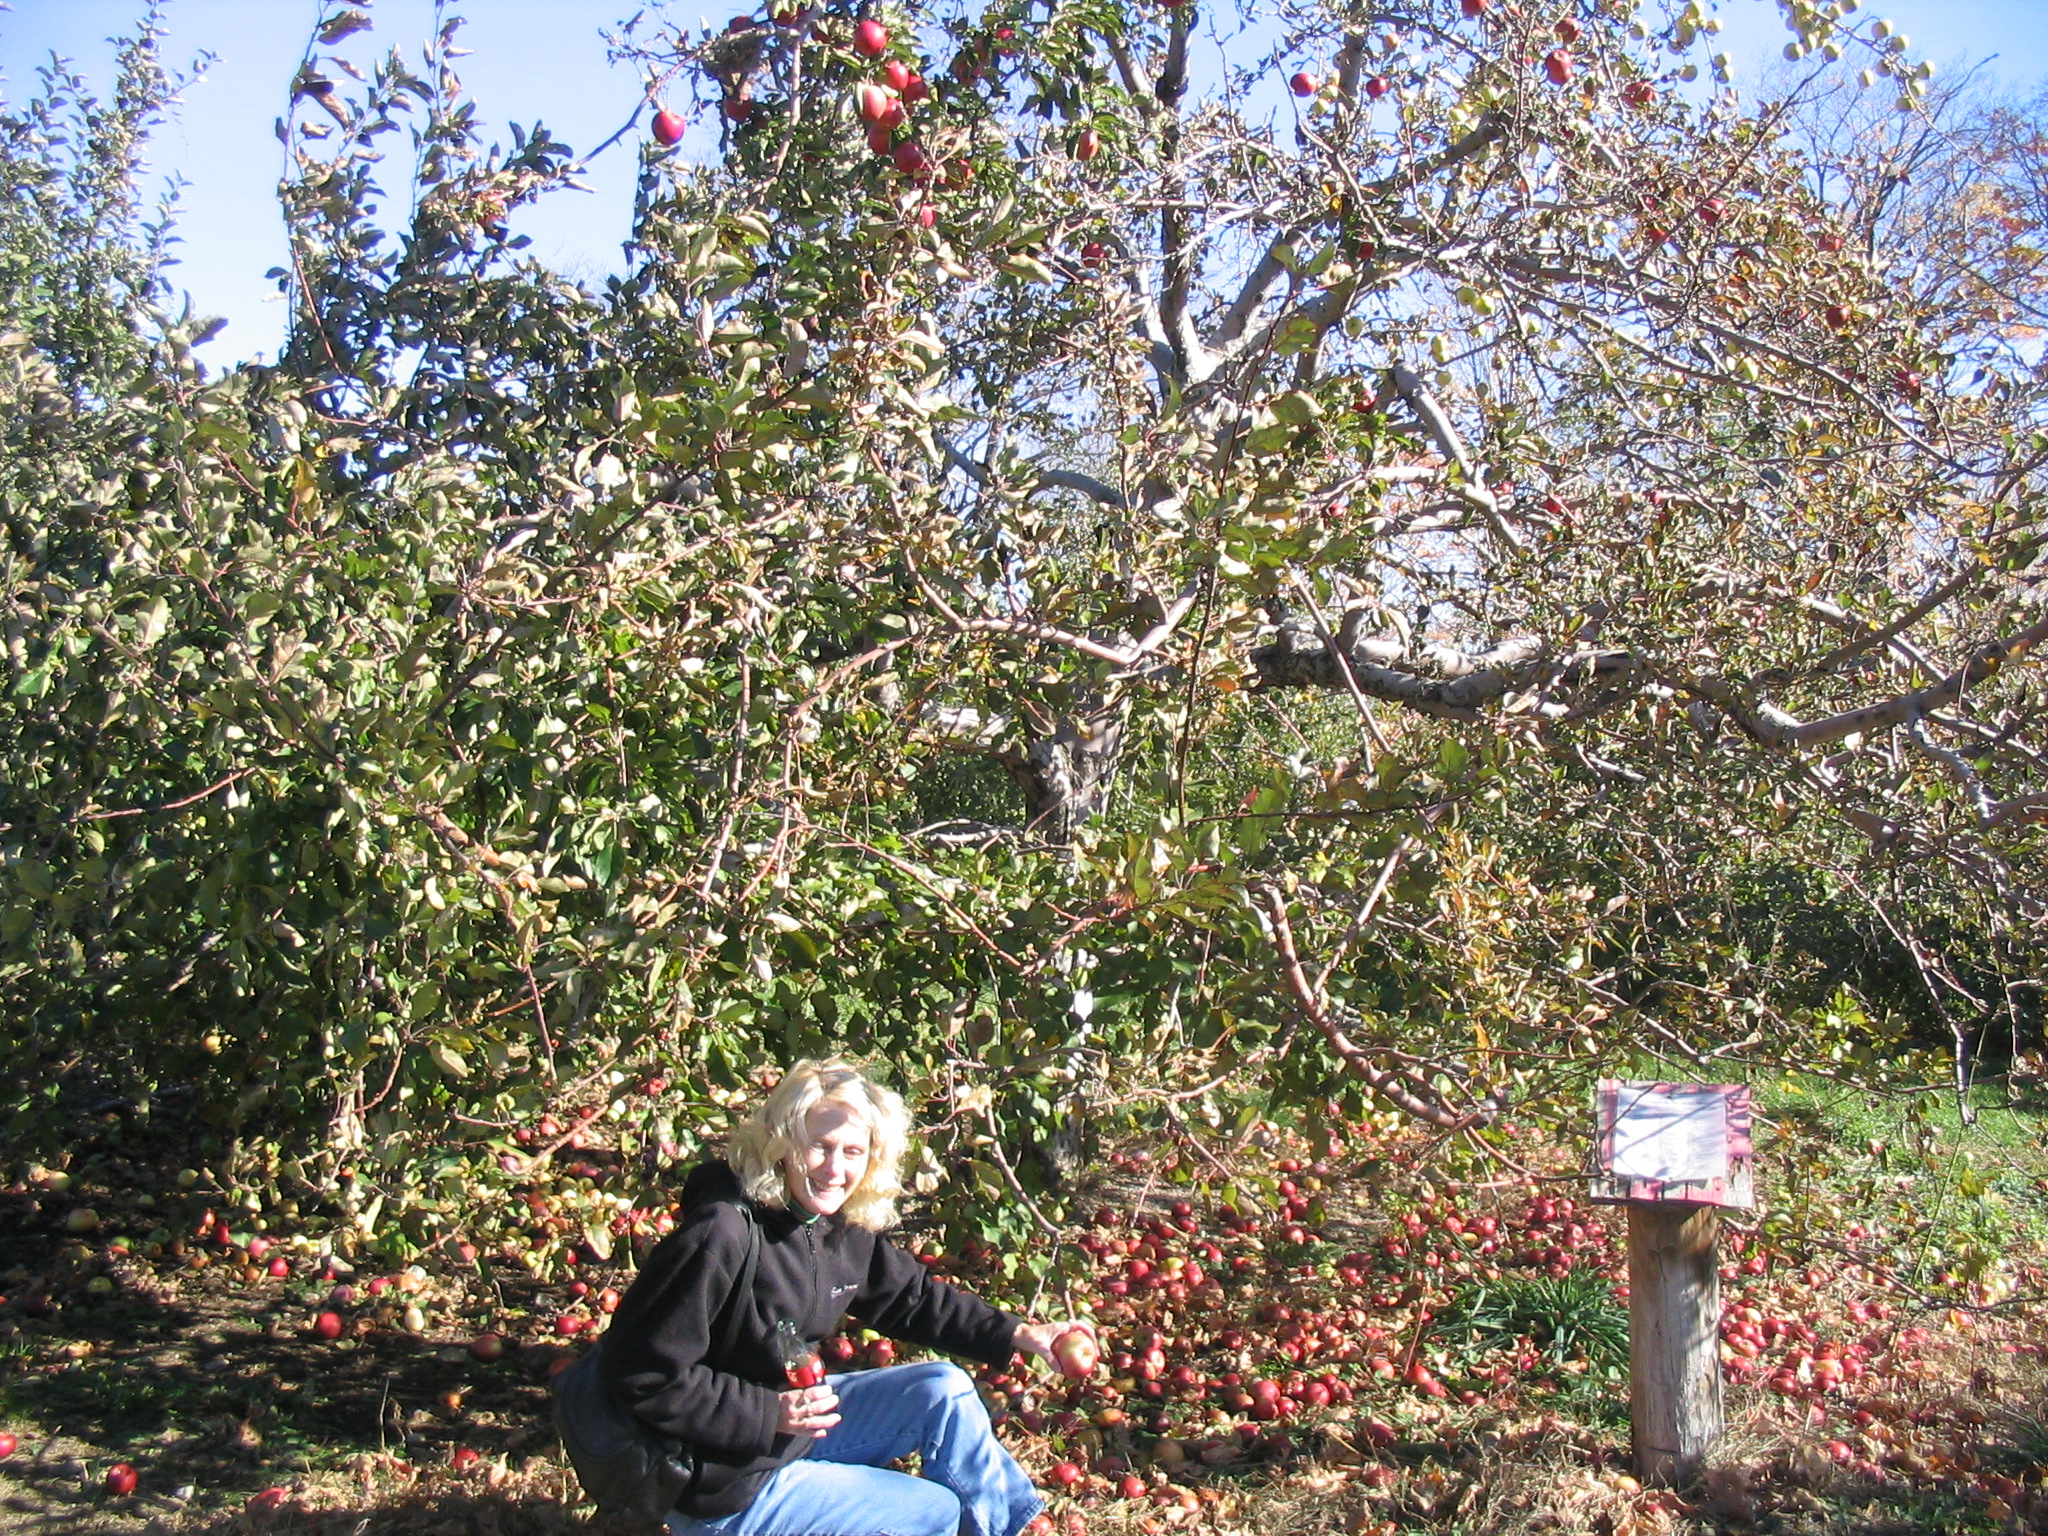 Lorna at apple harvest